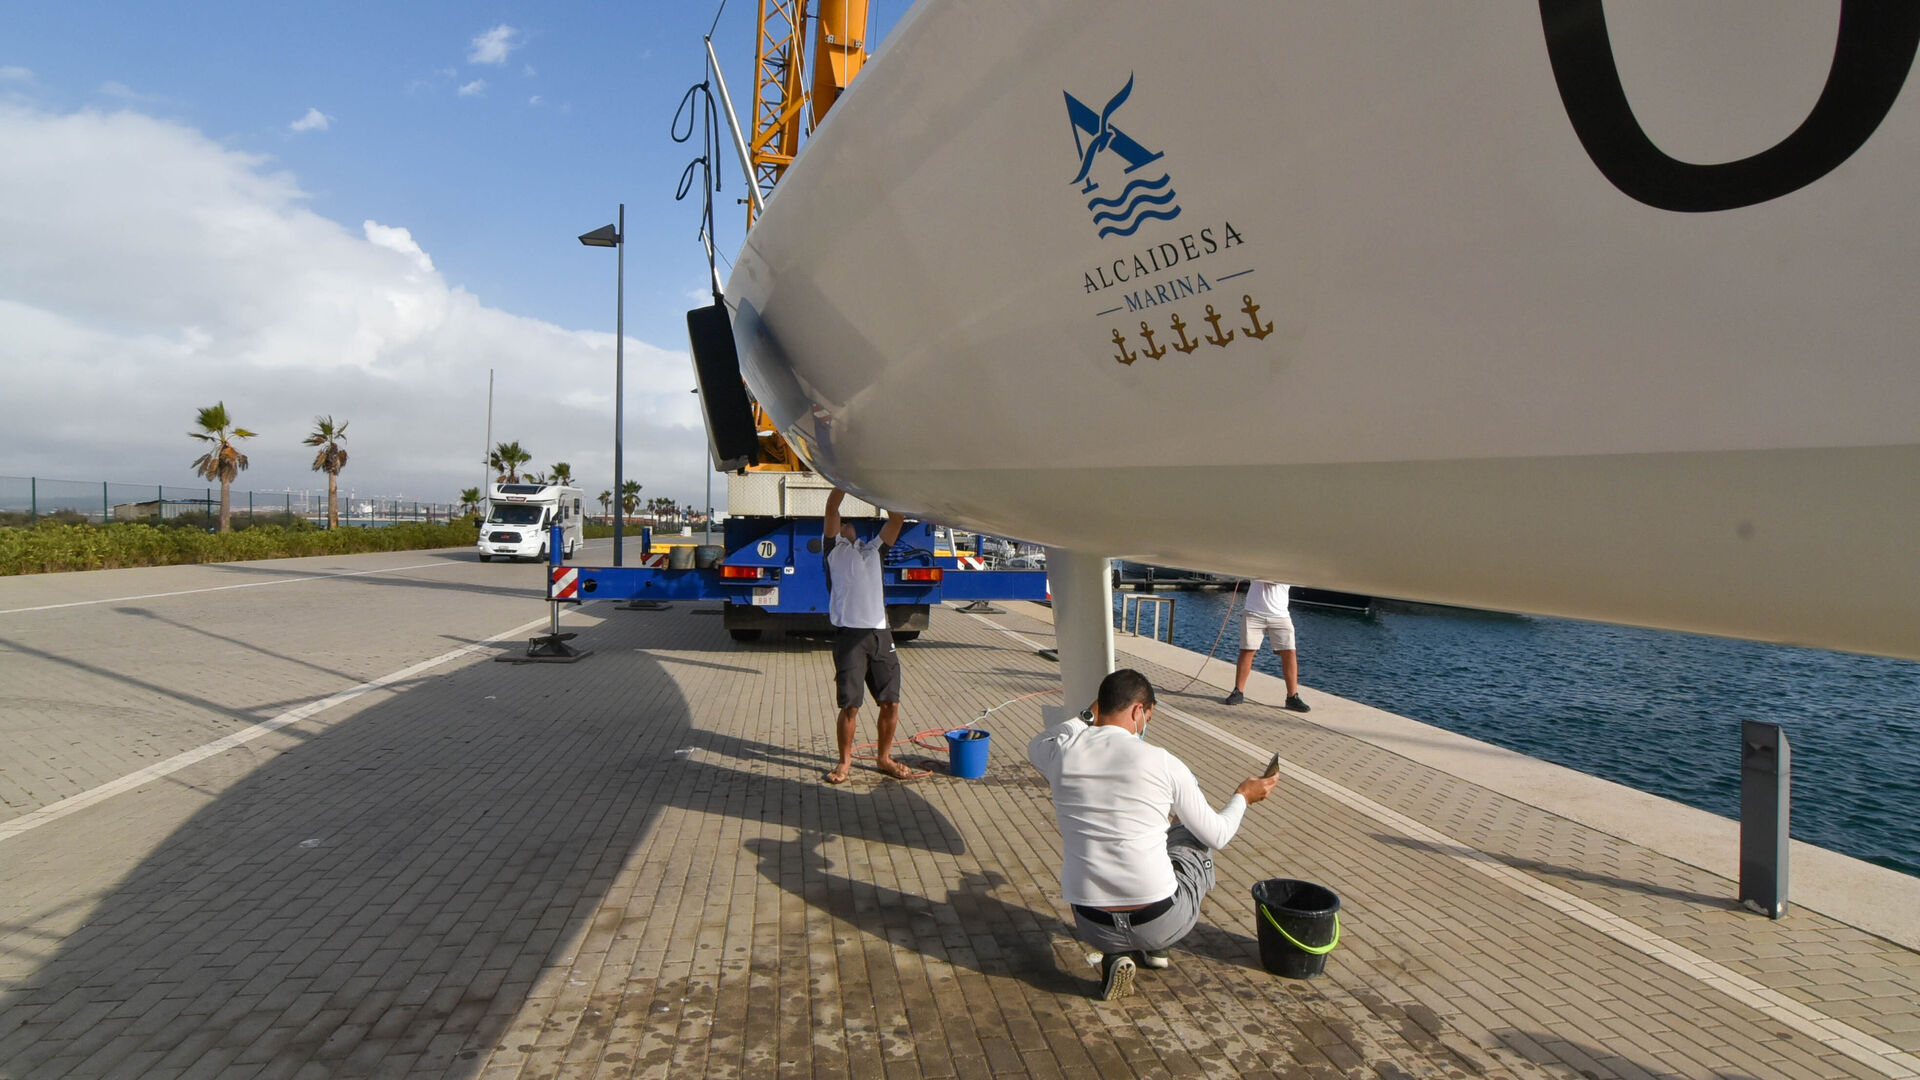 Fotos de los preparativos de la regata de vela J80 del Campeonato de Espa&ntilde;a